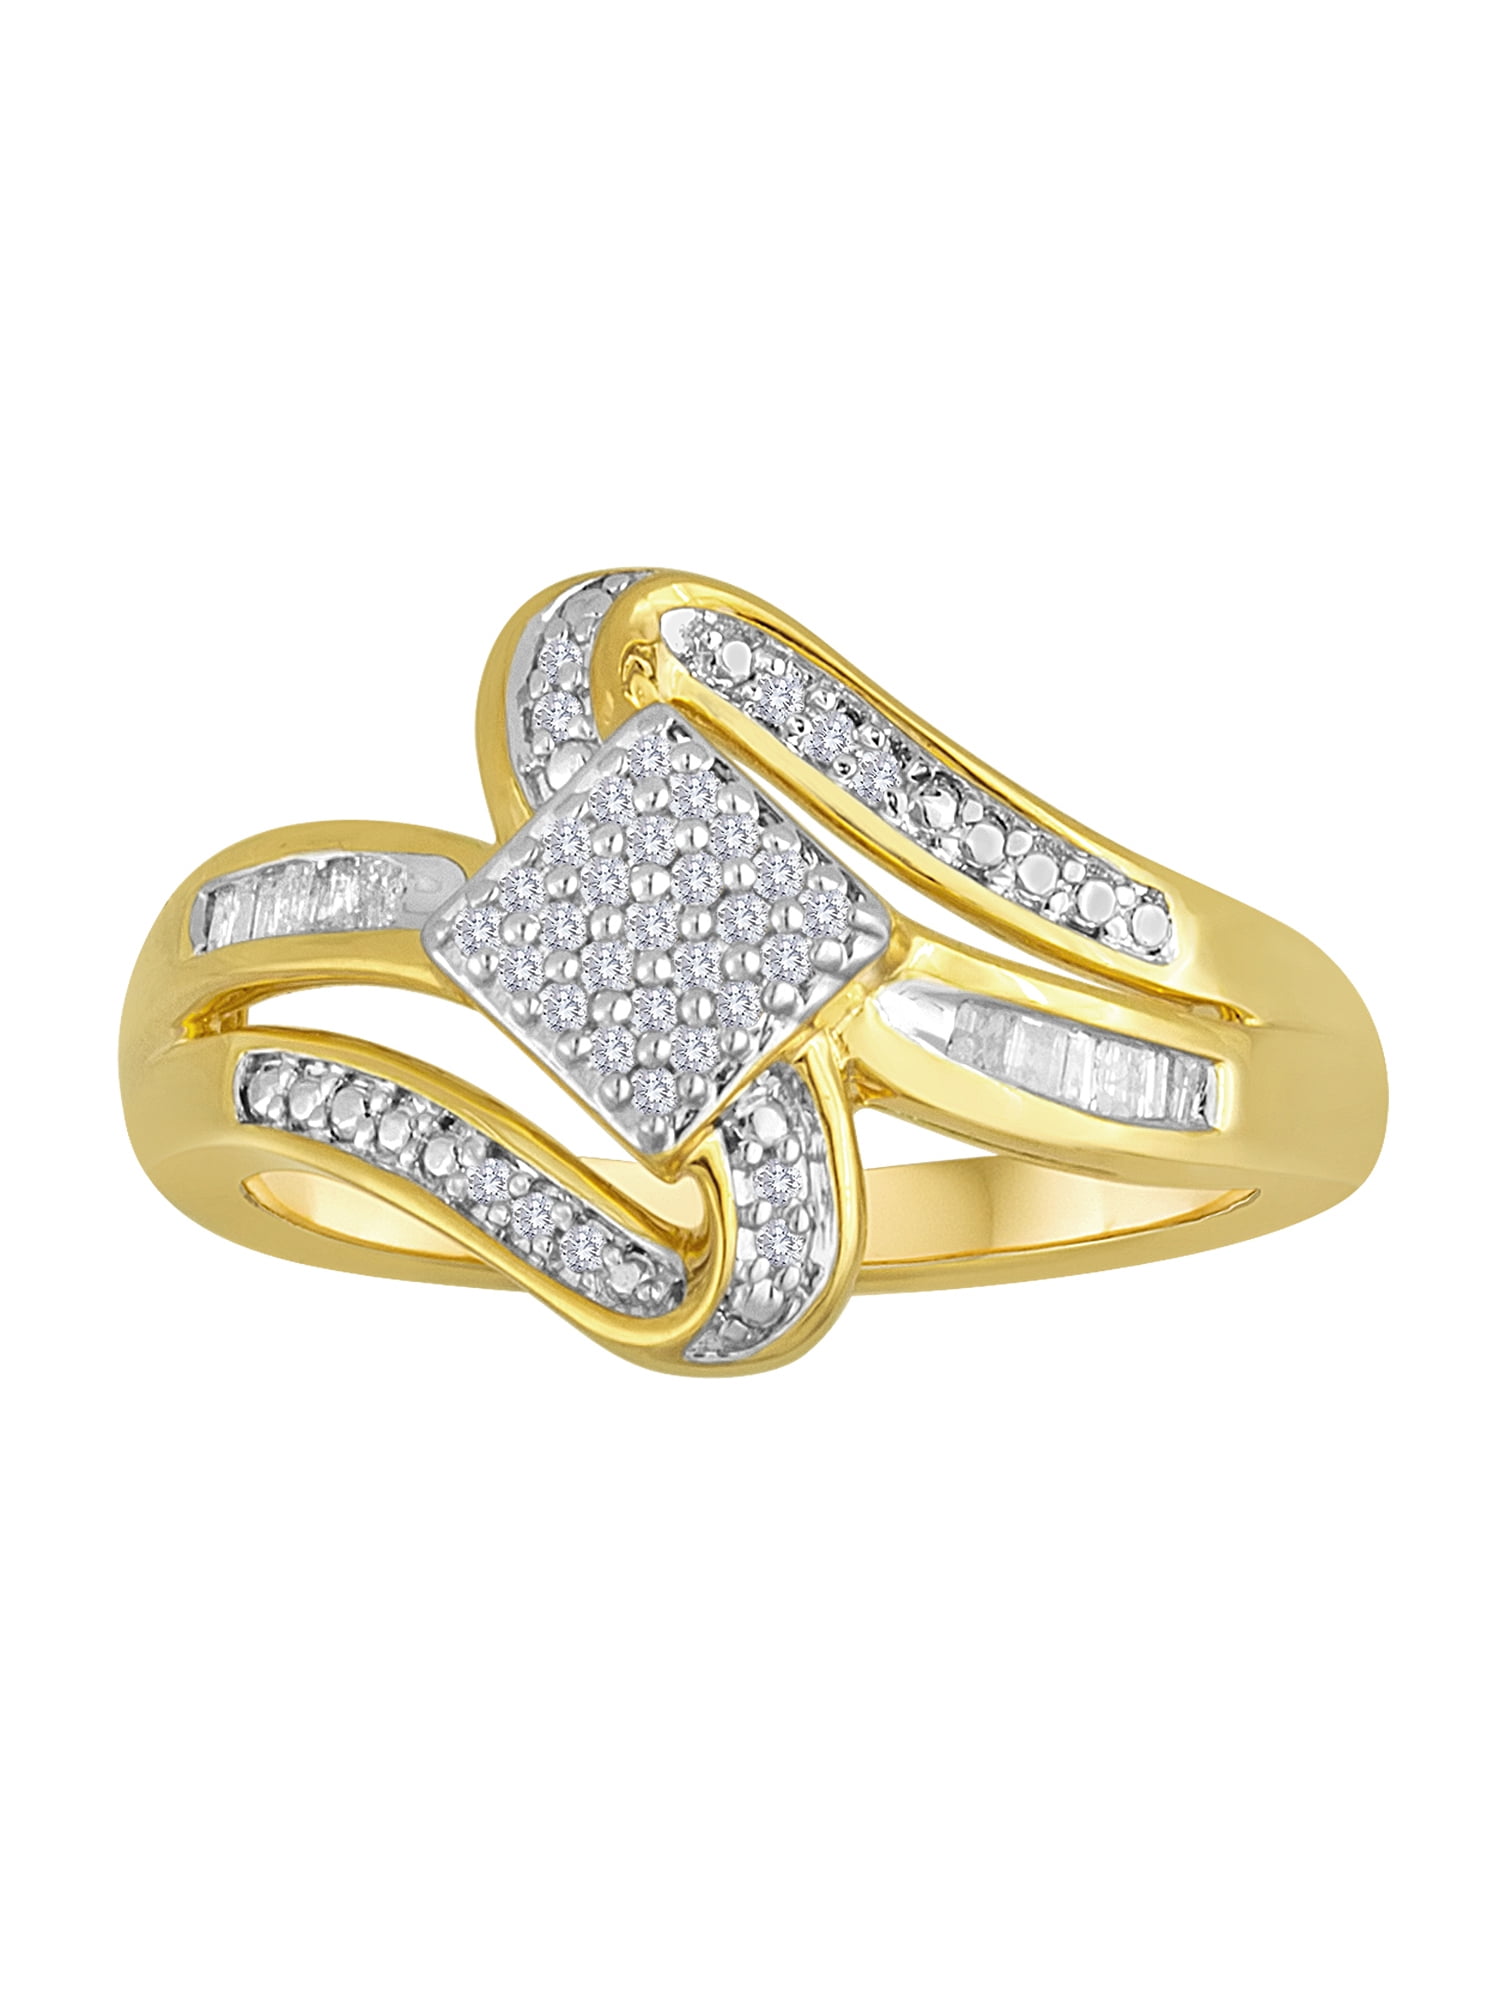 Fine Jewelry  Diamond & Gold Jewelry